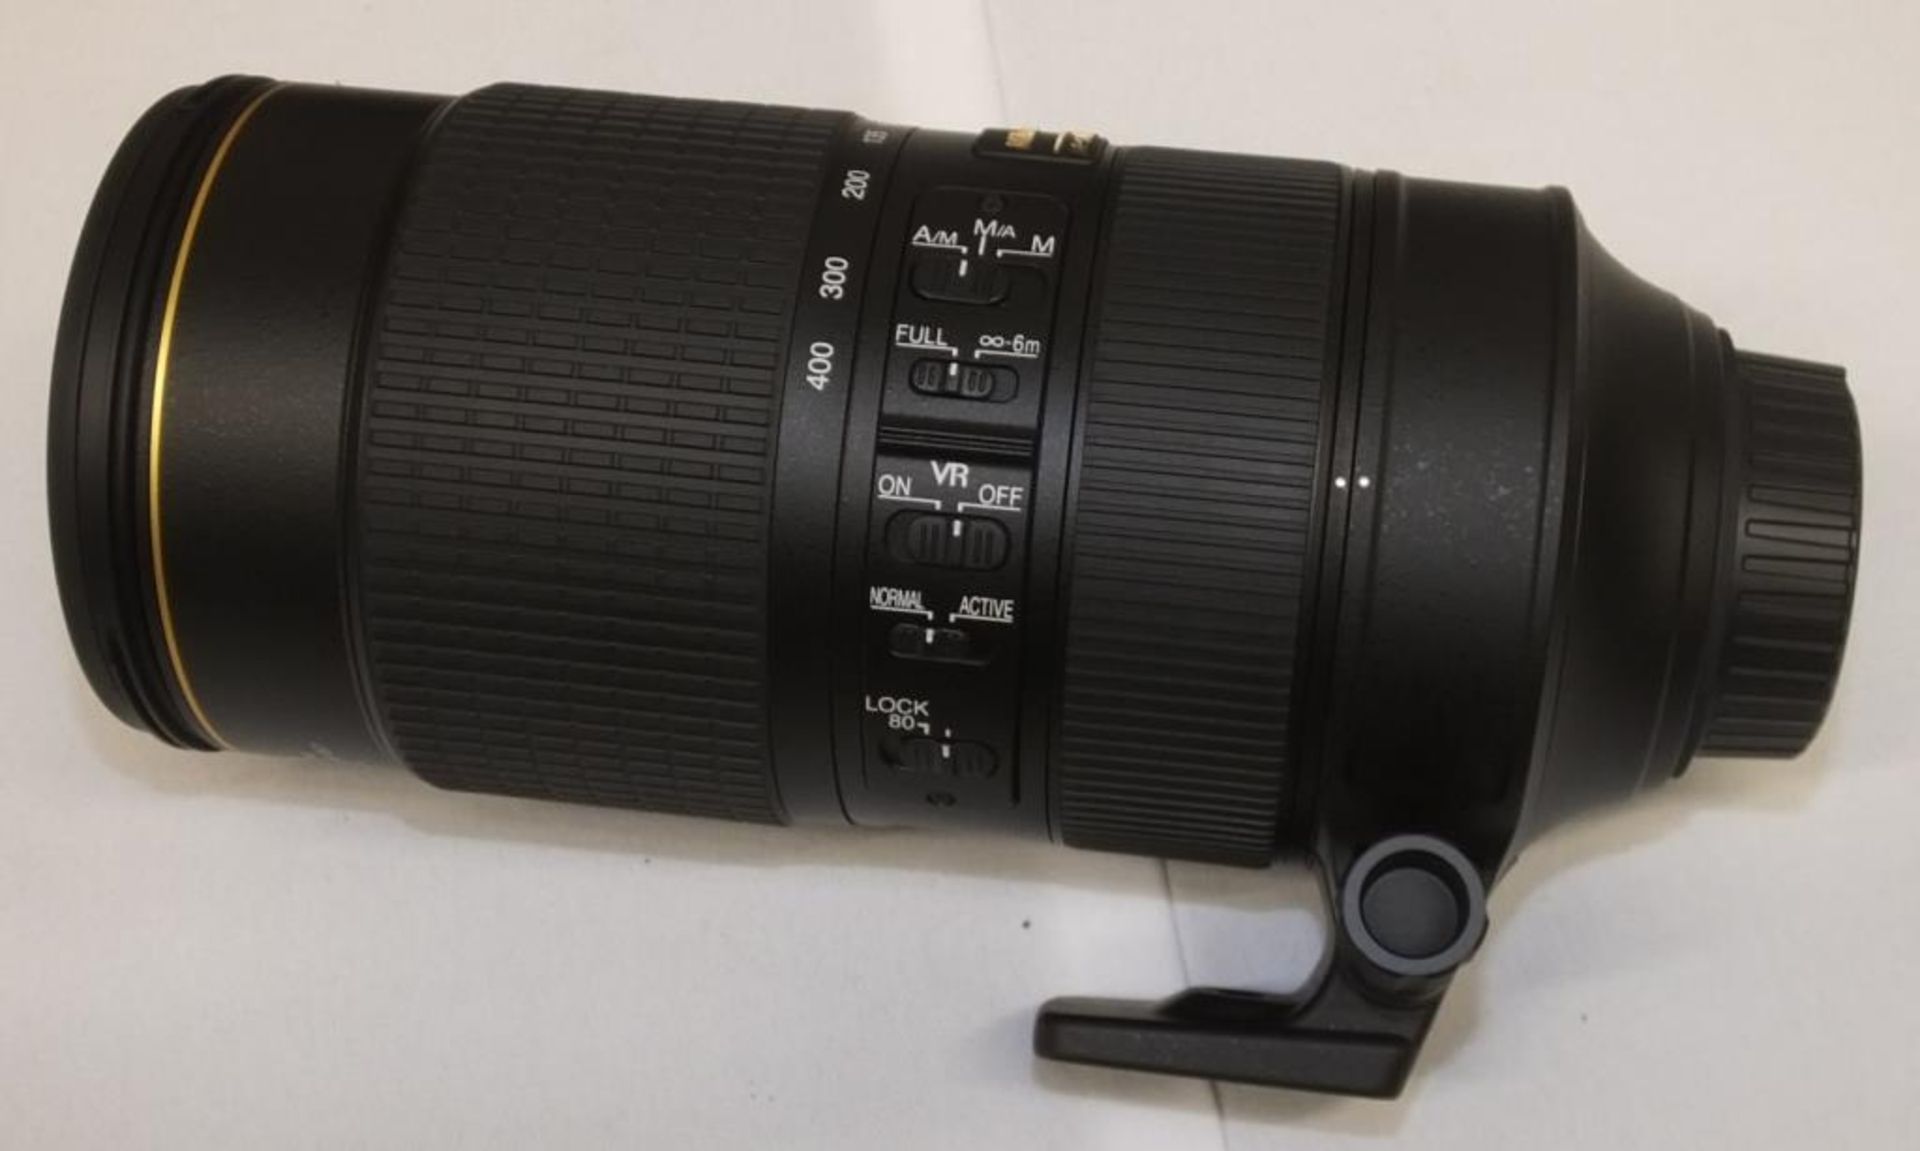 Nikon AF-S Nikkor 80-400mm F/4.5-5.6G ED VR Lens - Serial No. 268958 with Nikon CL-M2 Case - Image 5 of 7